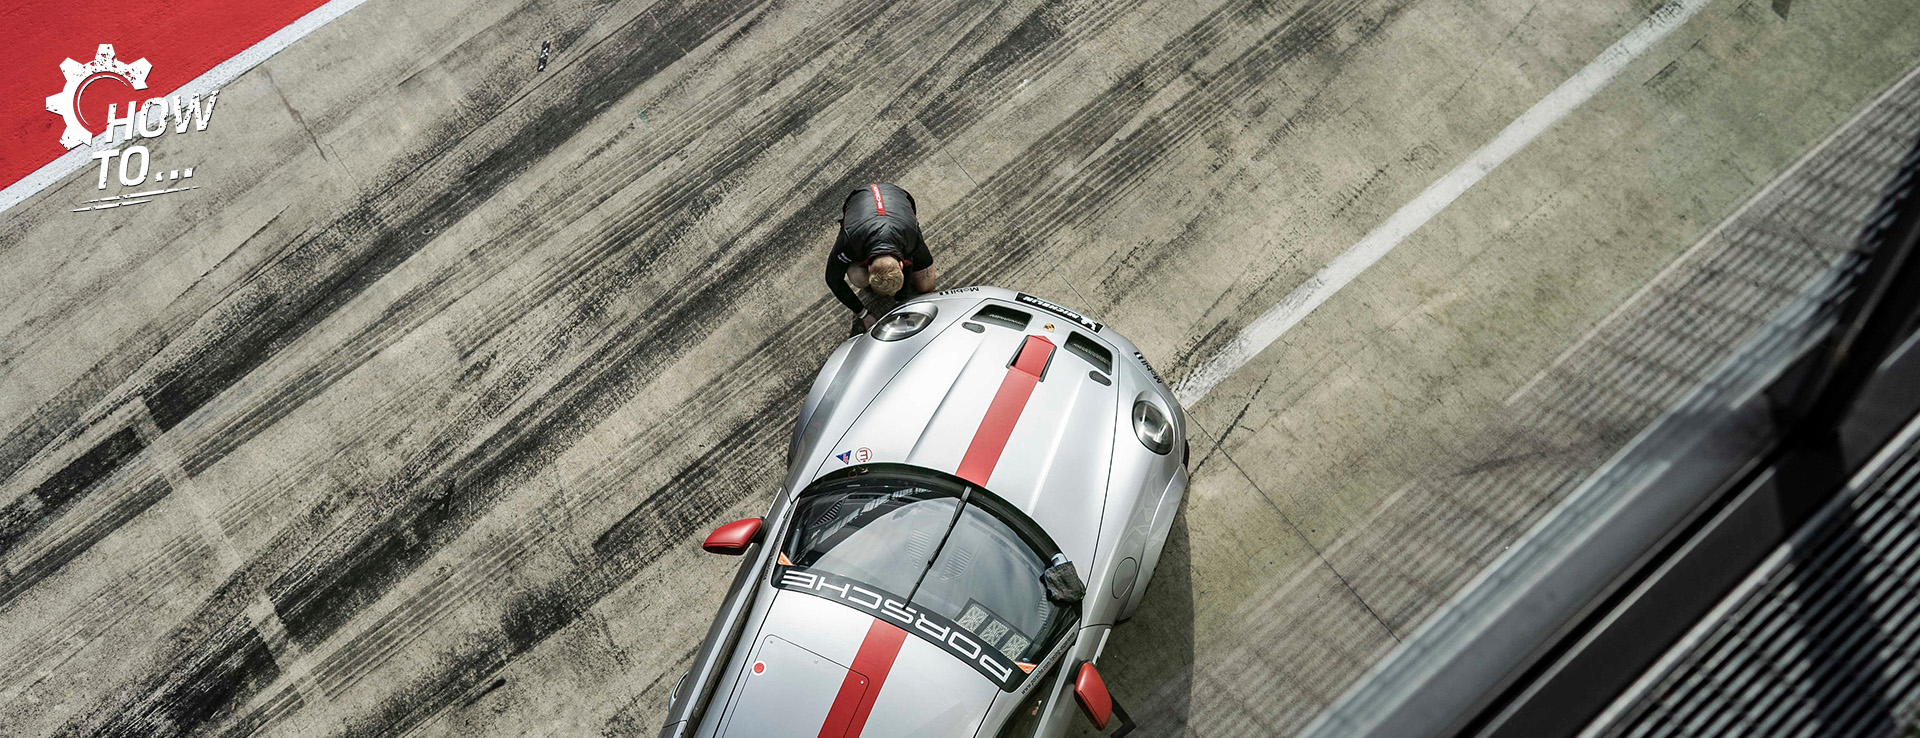 Man works on Porsche 911 GT3 racecar in pit lane